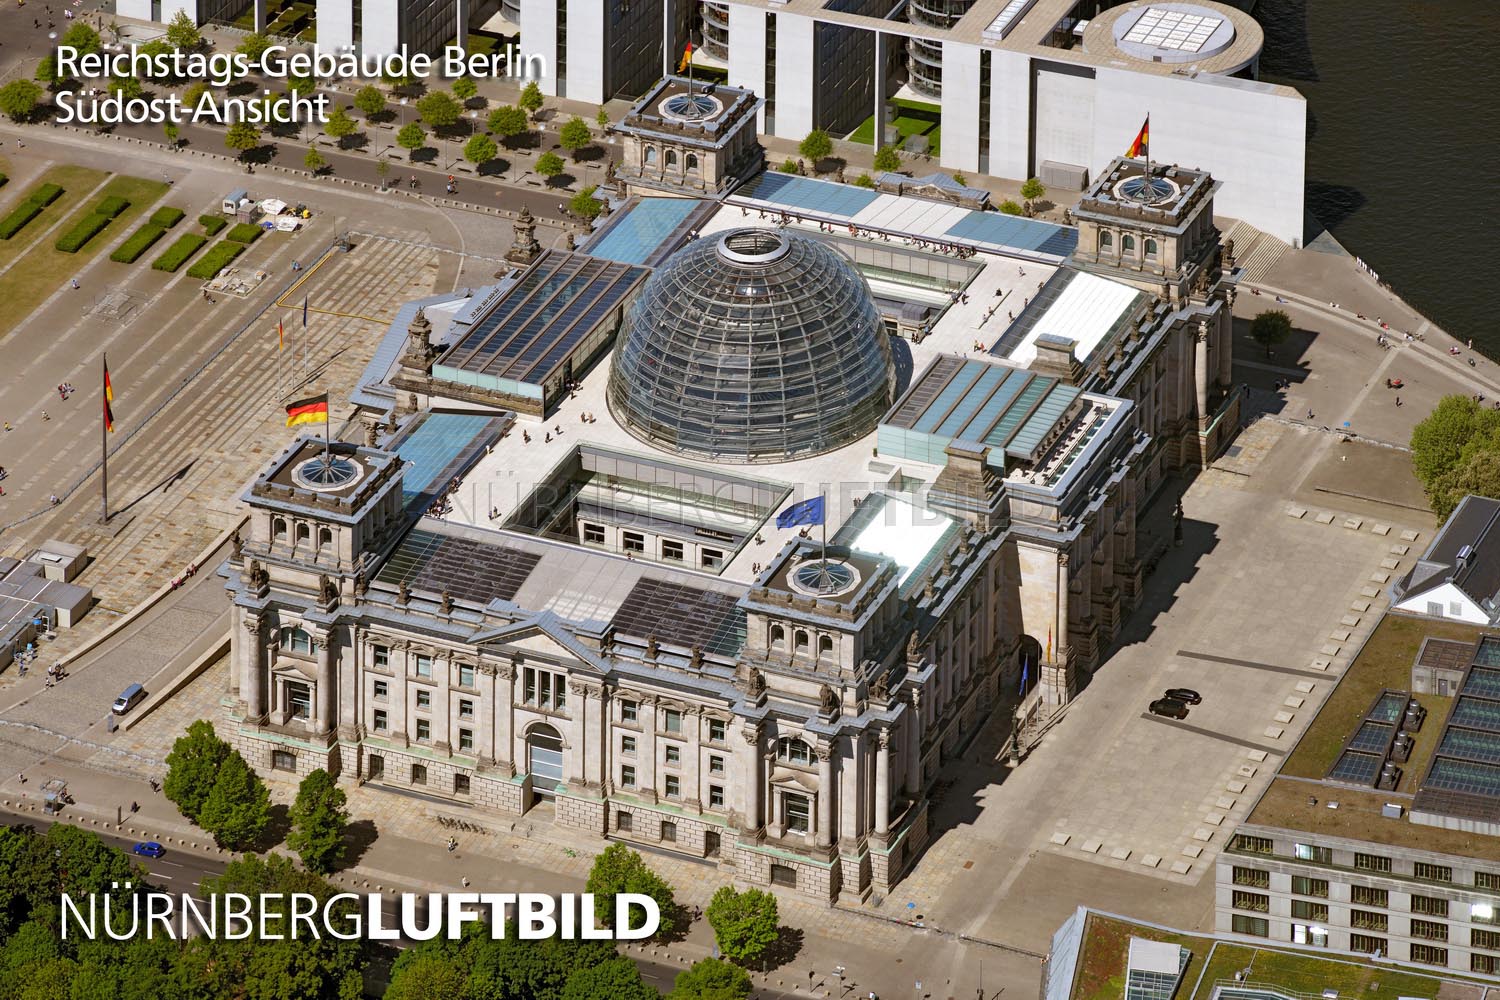 Reichstags-Gebäude Berlin, Südost-Ansicht